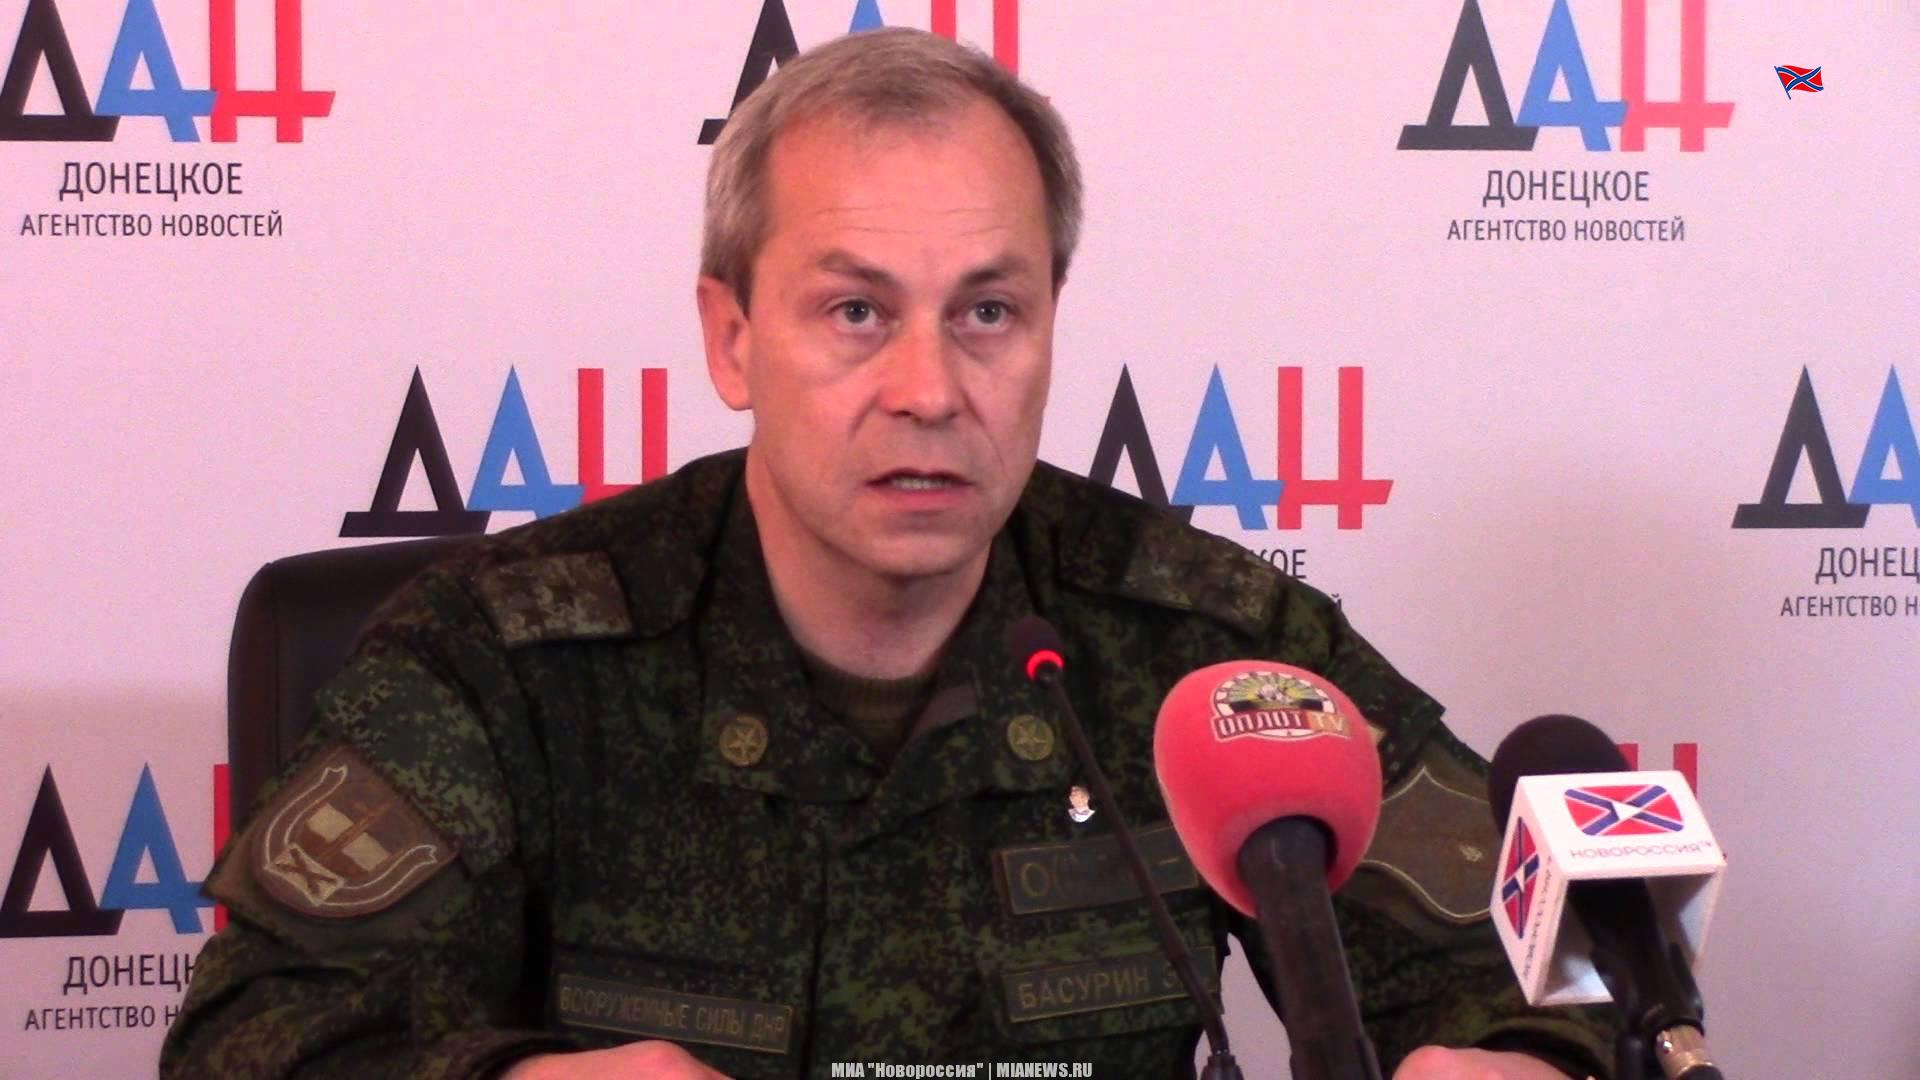 Сводка военной обстановки в Донецкой Народной Республики от 15 марта